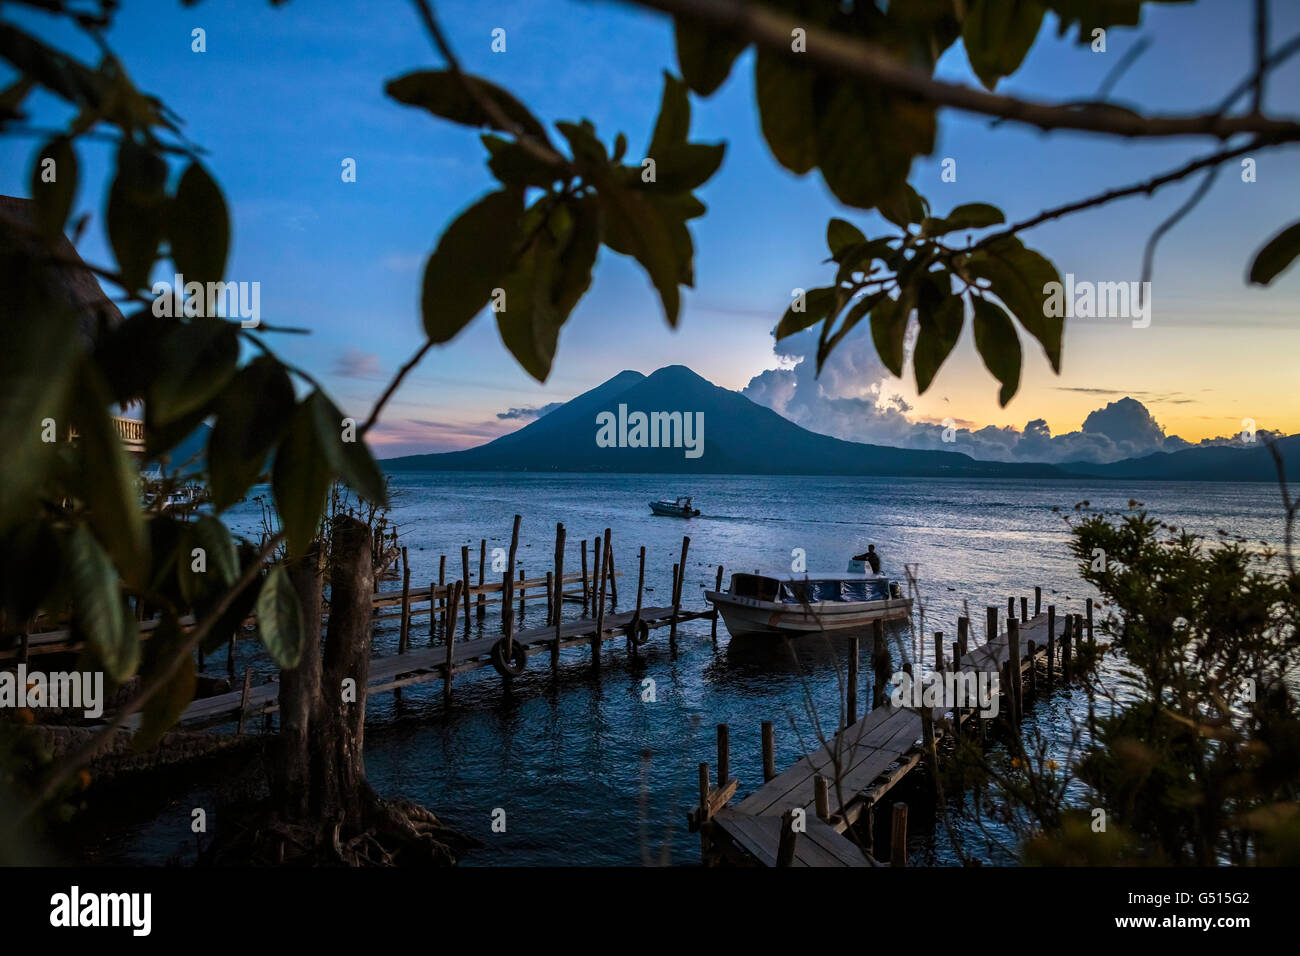 Die Sonne geht über Lago de Atitlan in Guatemala, und die letzten Wassertaxis bringen Touristen zu den Docks in Panajachel in der Abenddämmerung. Stockfoto